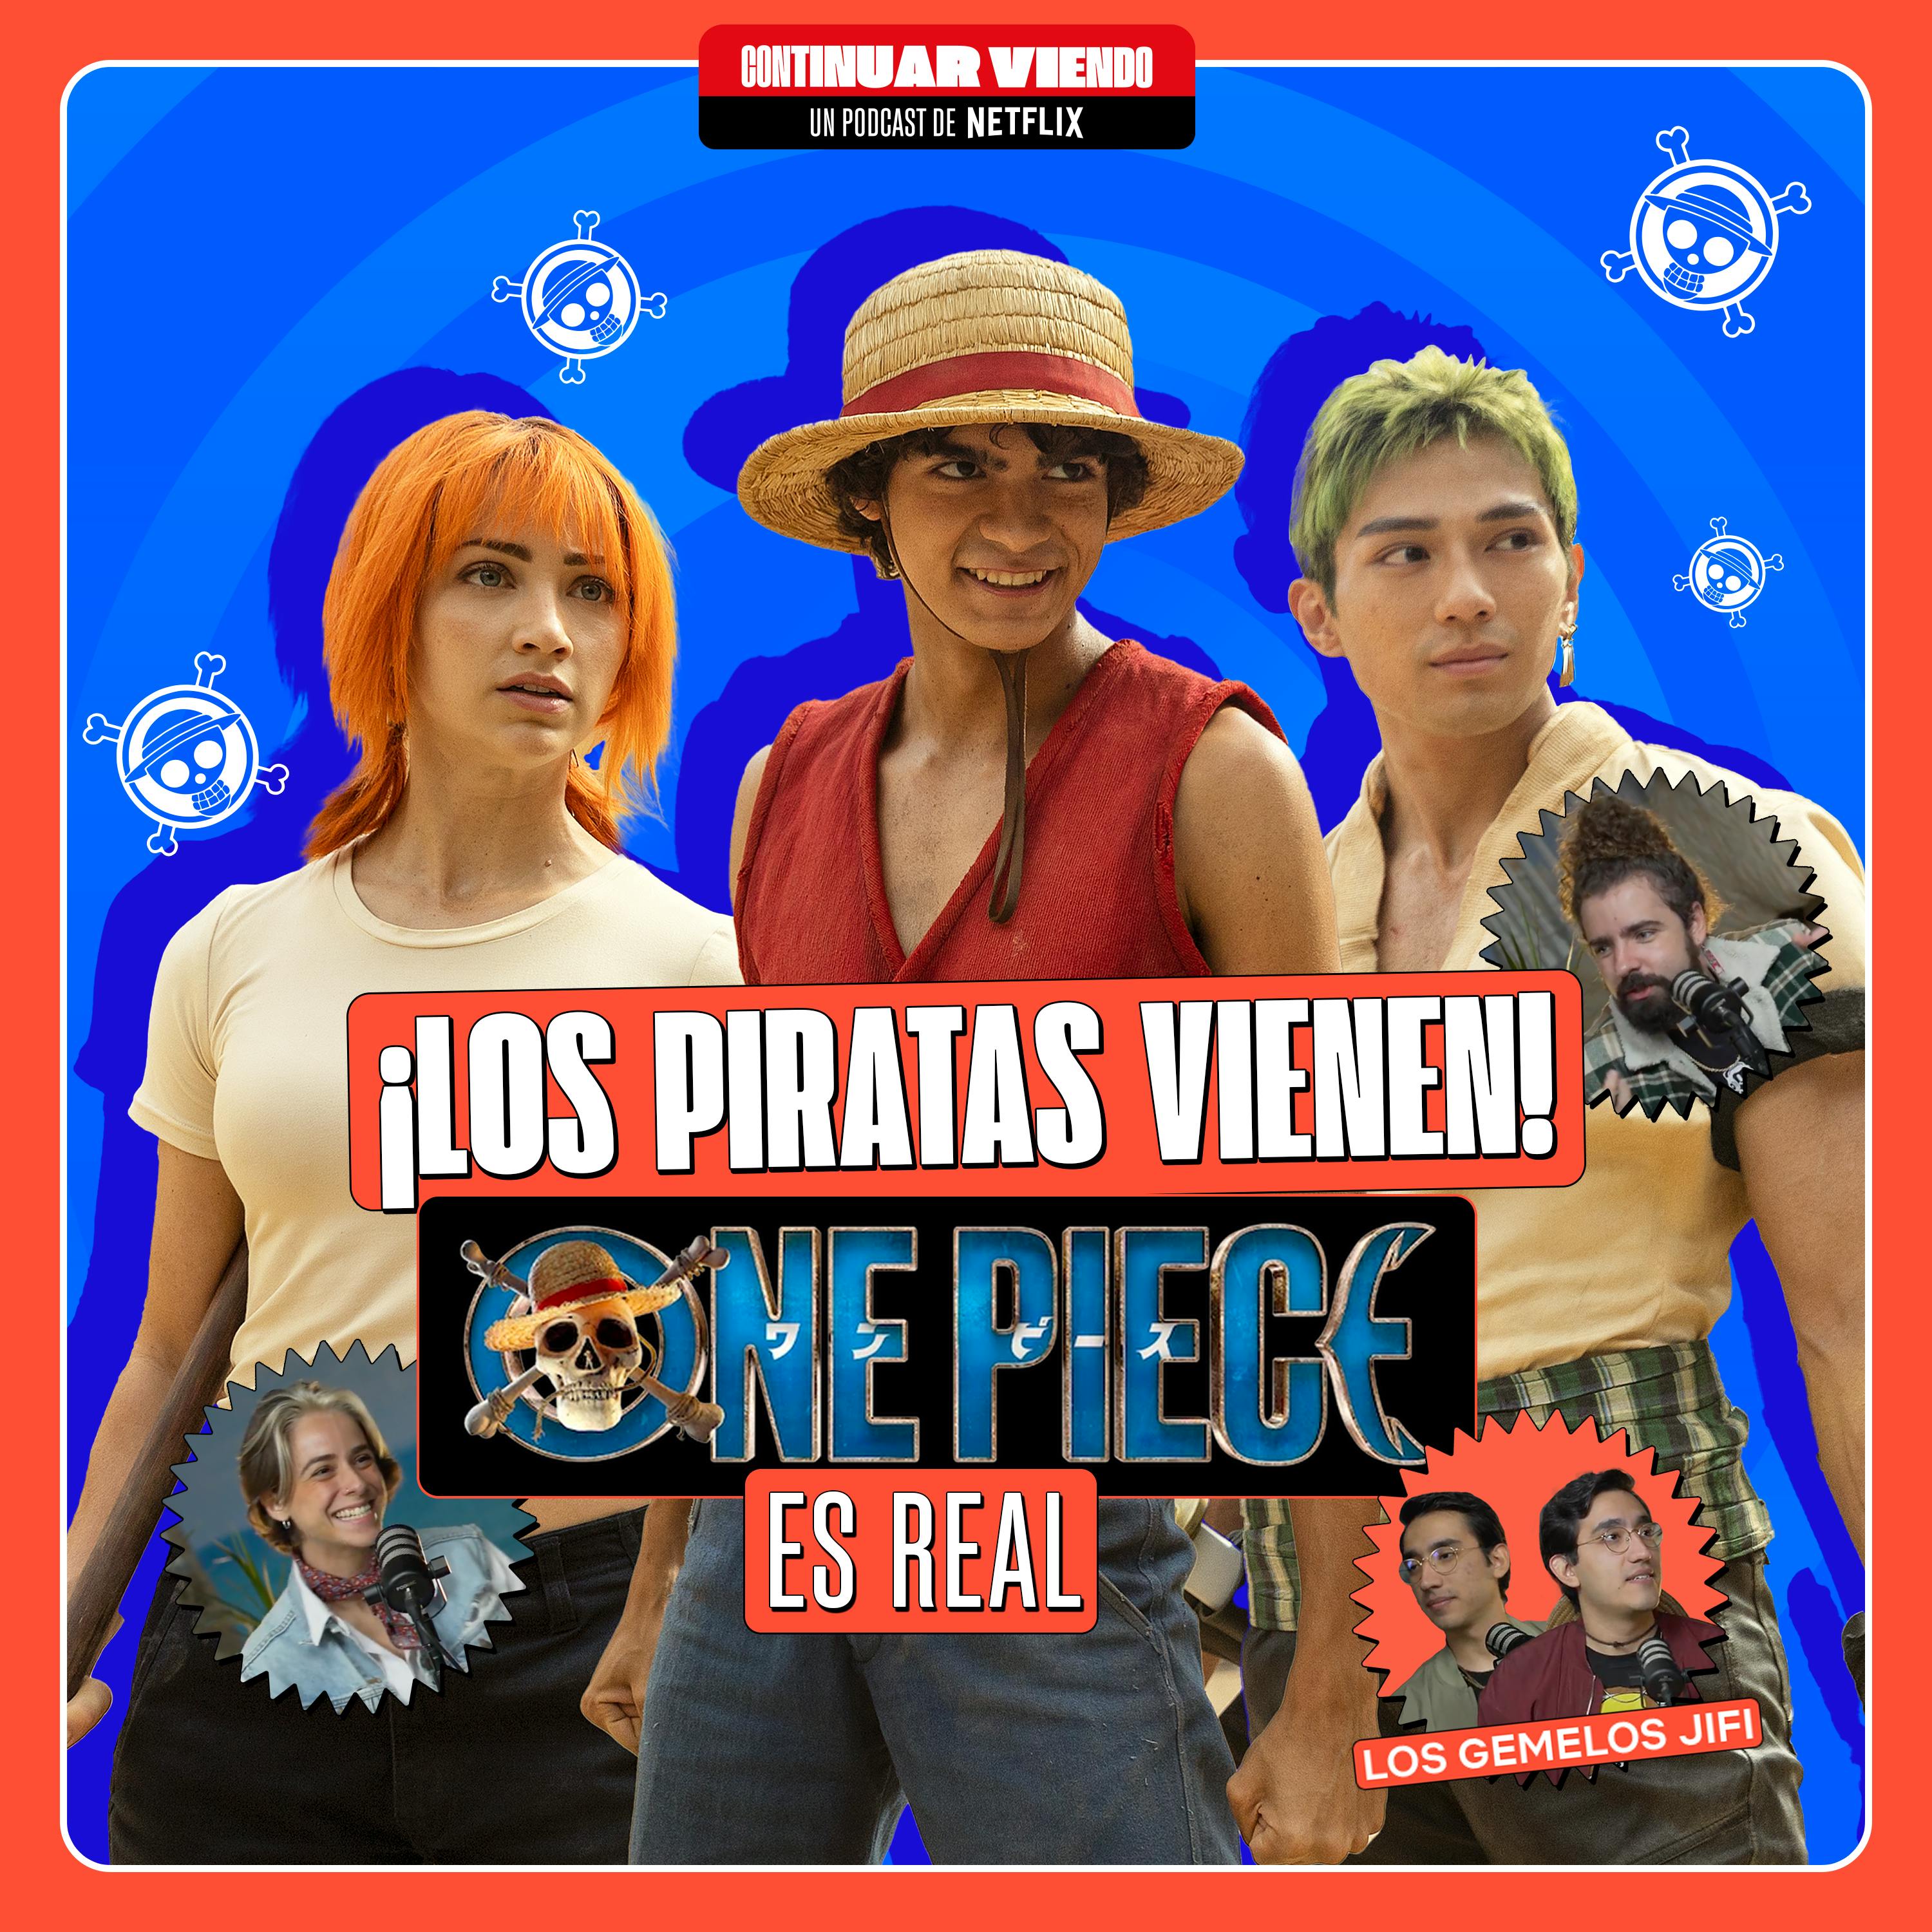 ¡Los piratas vienen! 🏴‍☠️ One Piece es real 👒